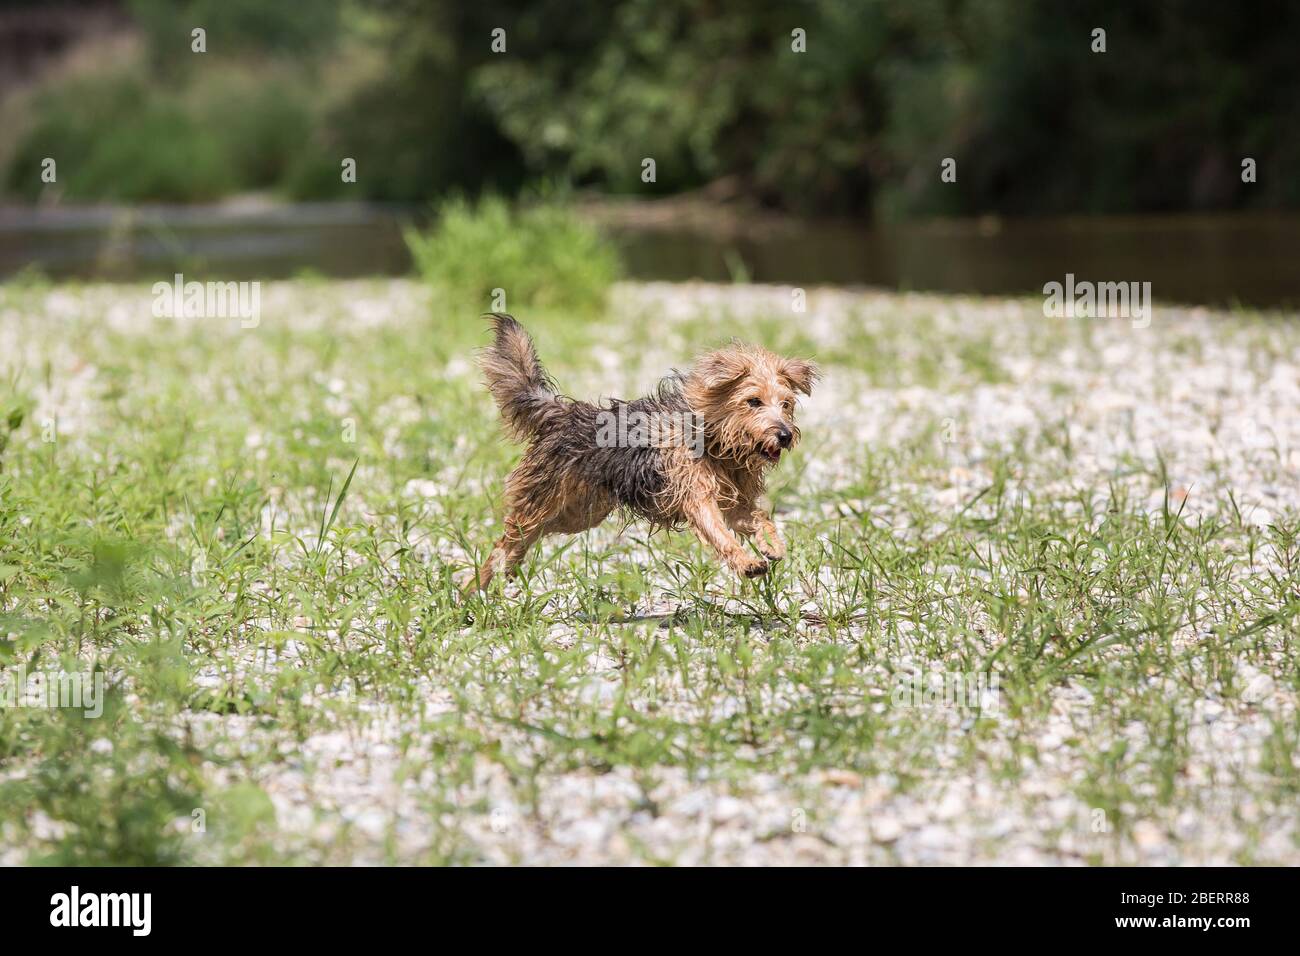 Jeune terrier courir et sauter joyeusement à travers un pré. Un chien heureux jouant sur la rive lors d'une journée d'été ensoleillée, Leitha River, Autriche Banque D'Images